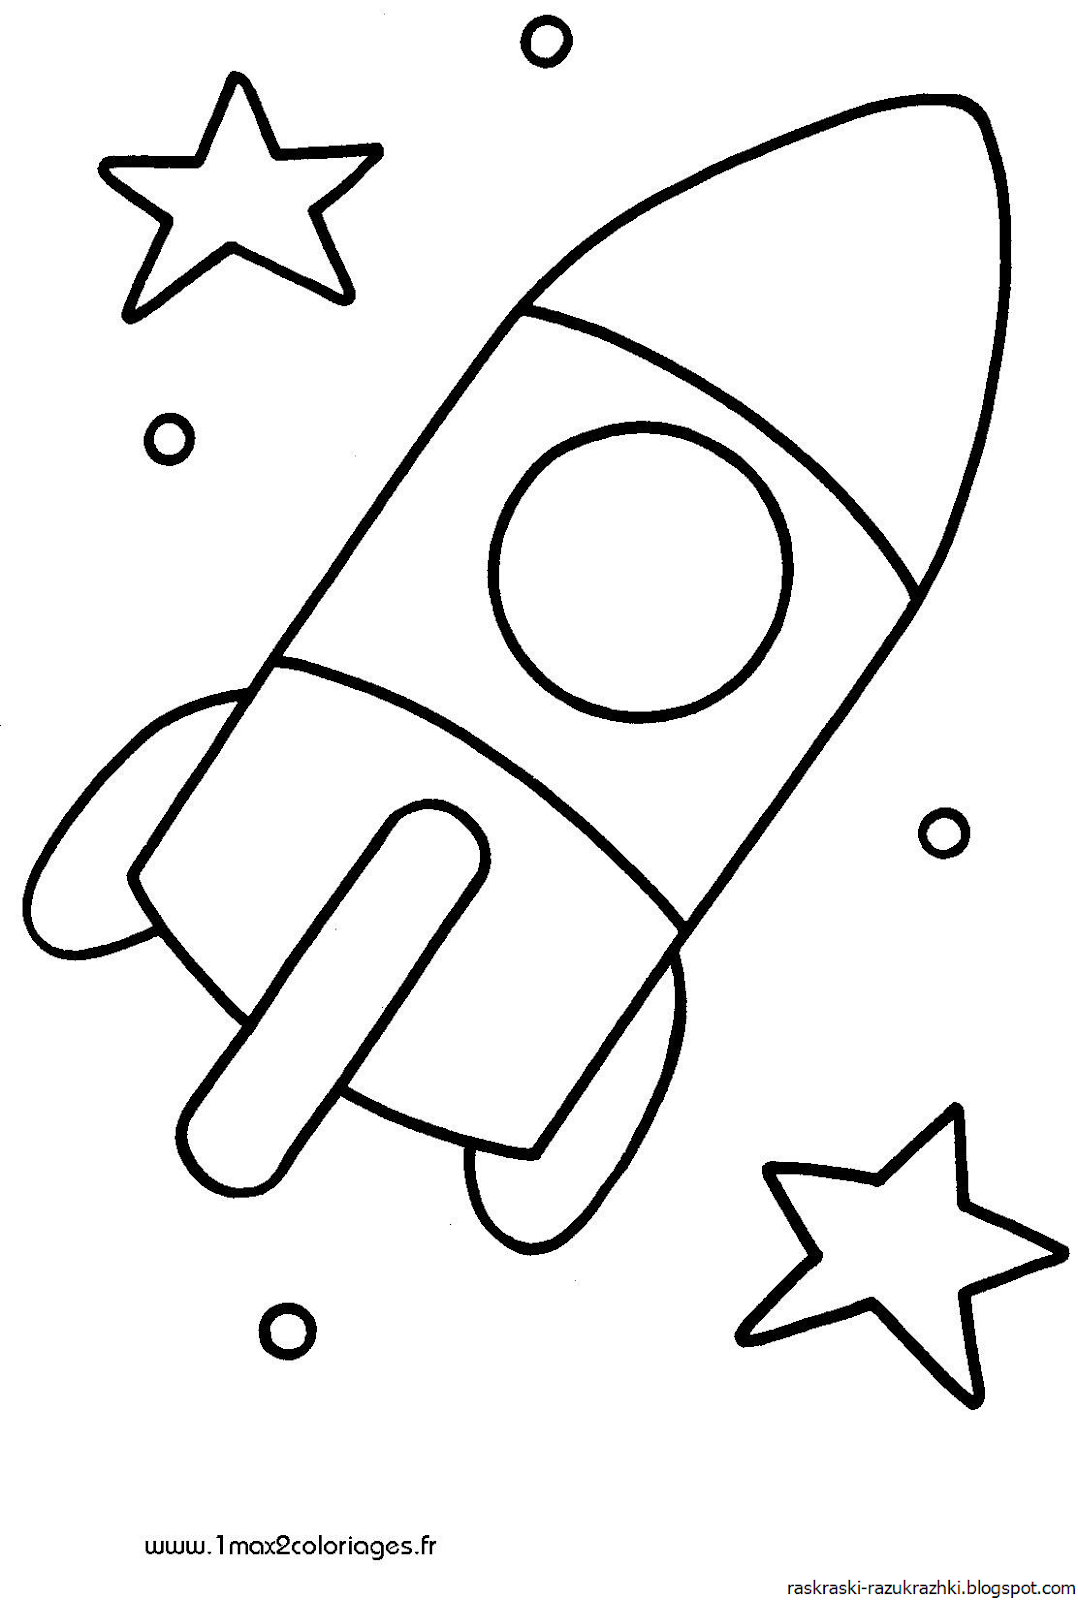 Ракета раскраска для детей 5 лет. Ракета раскраска. Ракета раскраска для малышей. Раскраски на тему космос для детей 3-4 лет. Раскраска для малышей. Космос.